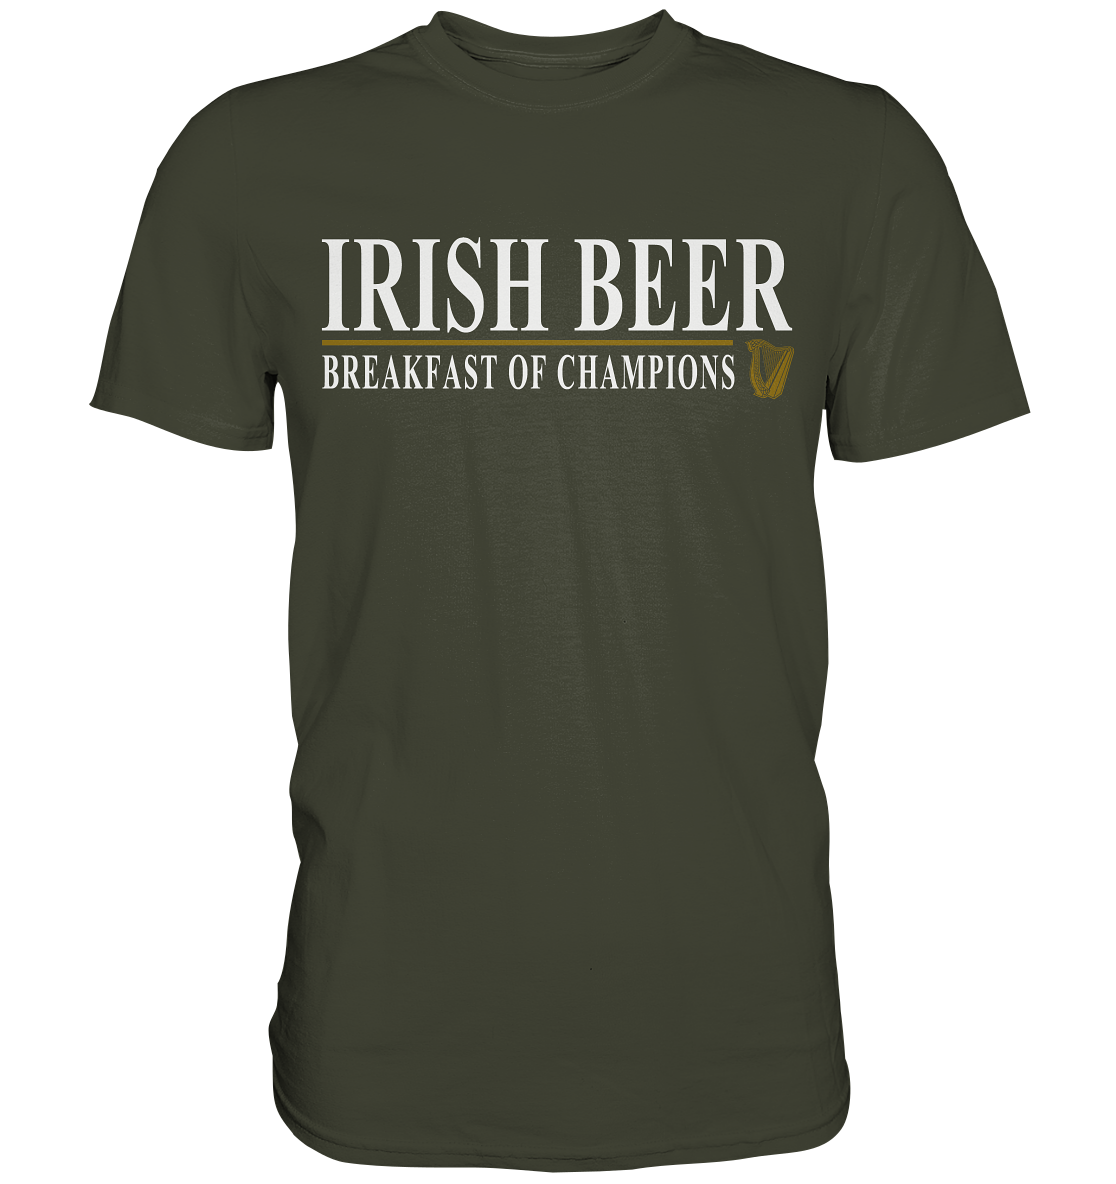 Irish Beer "Breakfast Of Champions" - Premium Shirt